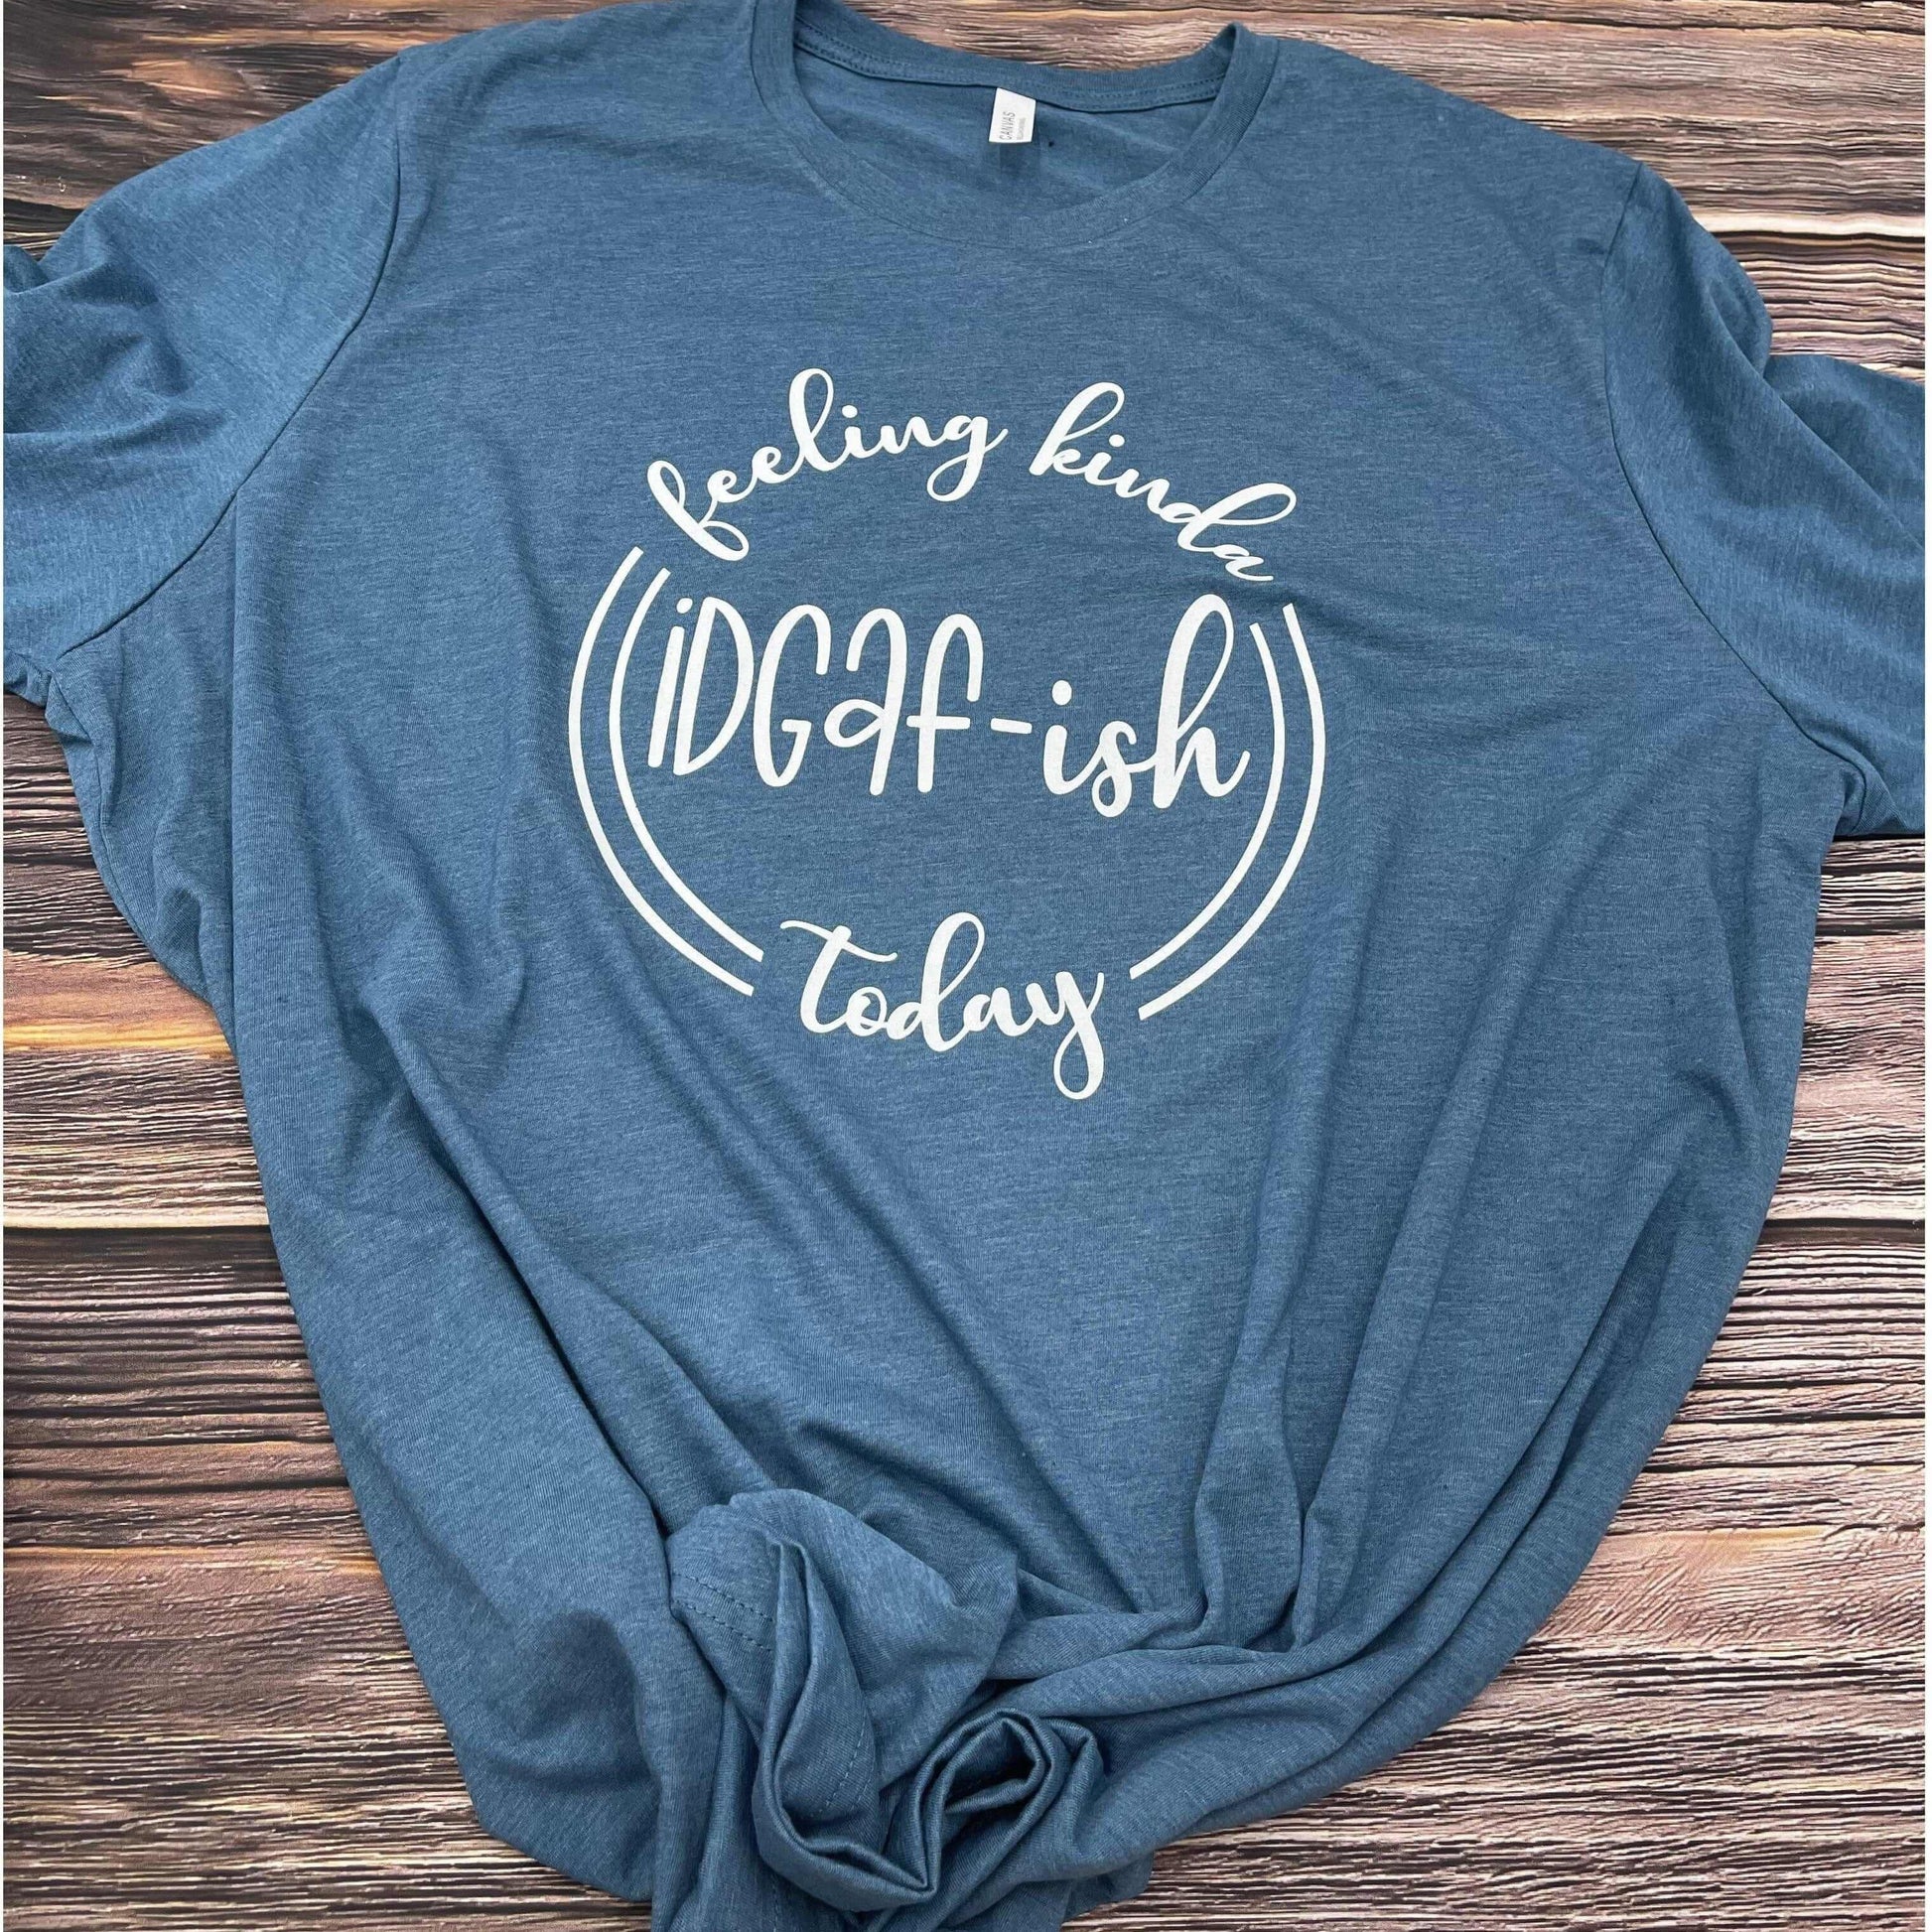 Feeling Kinda IDGAF-ish Today -Funny T-shirt